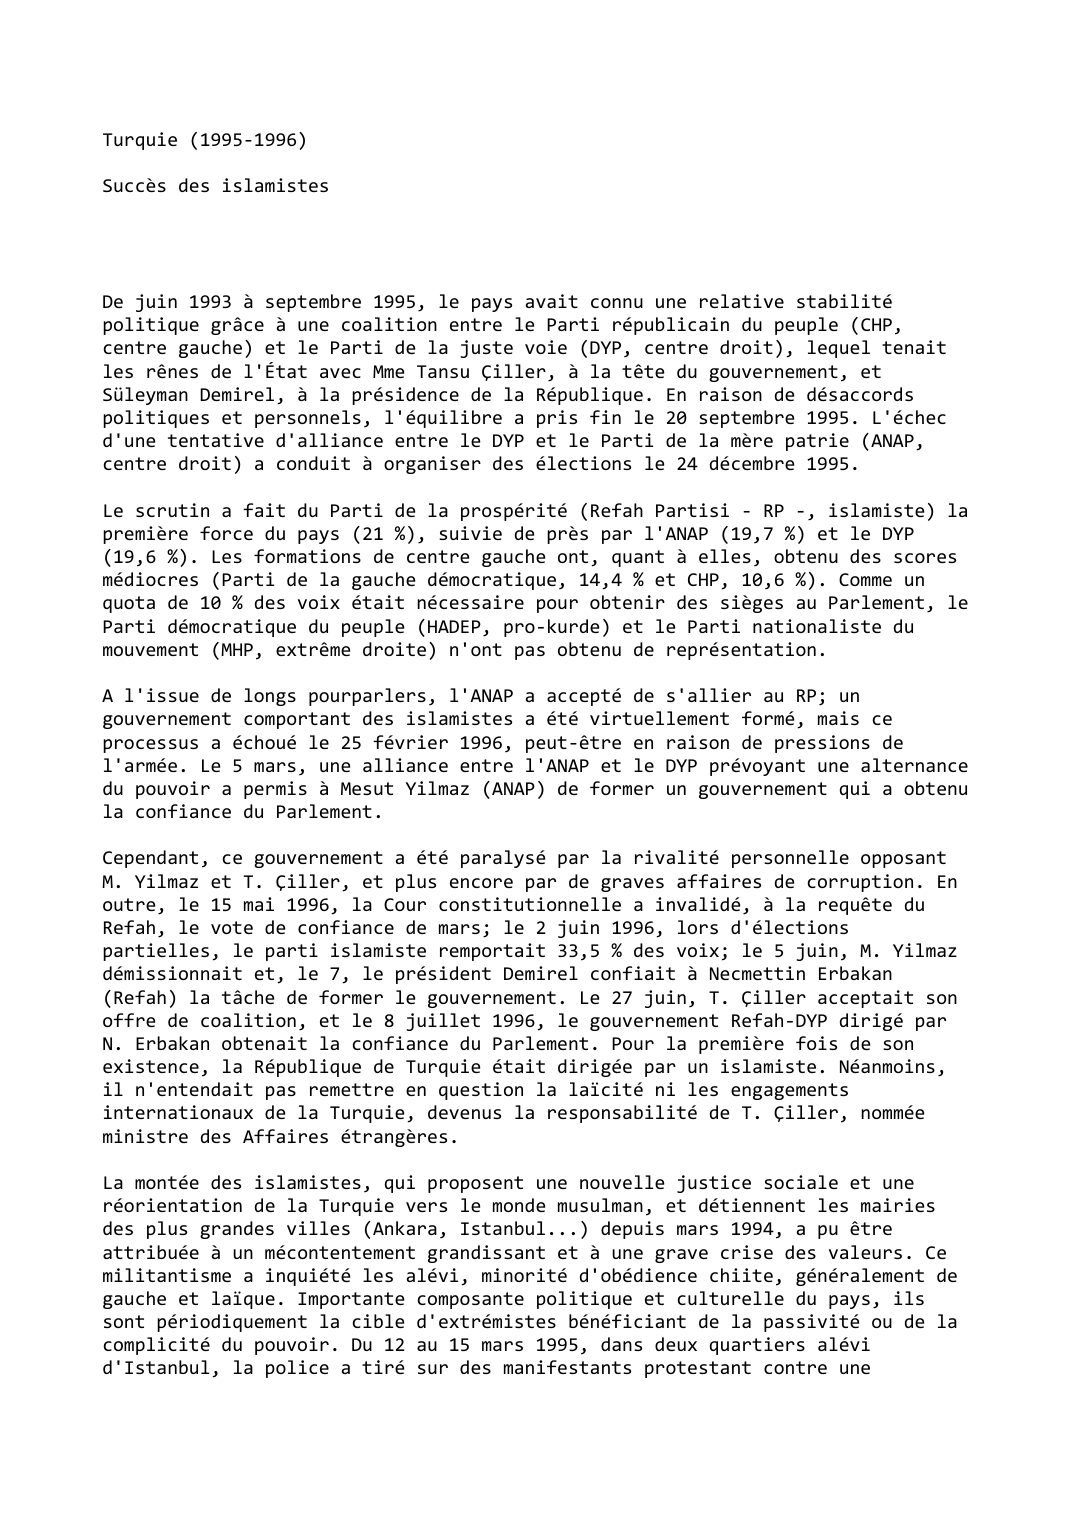 Prévisualisation du document Turquie (1995-1996)

Succès des islamistes